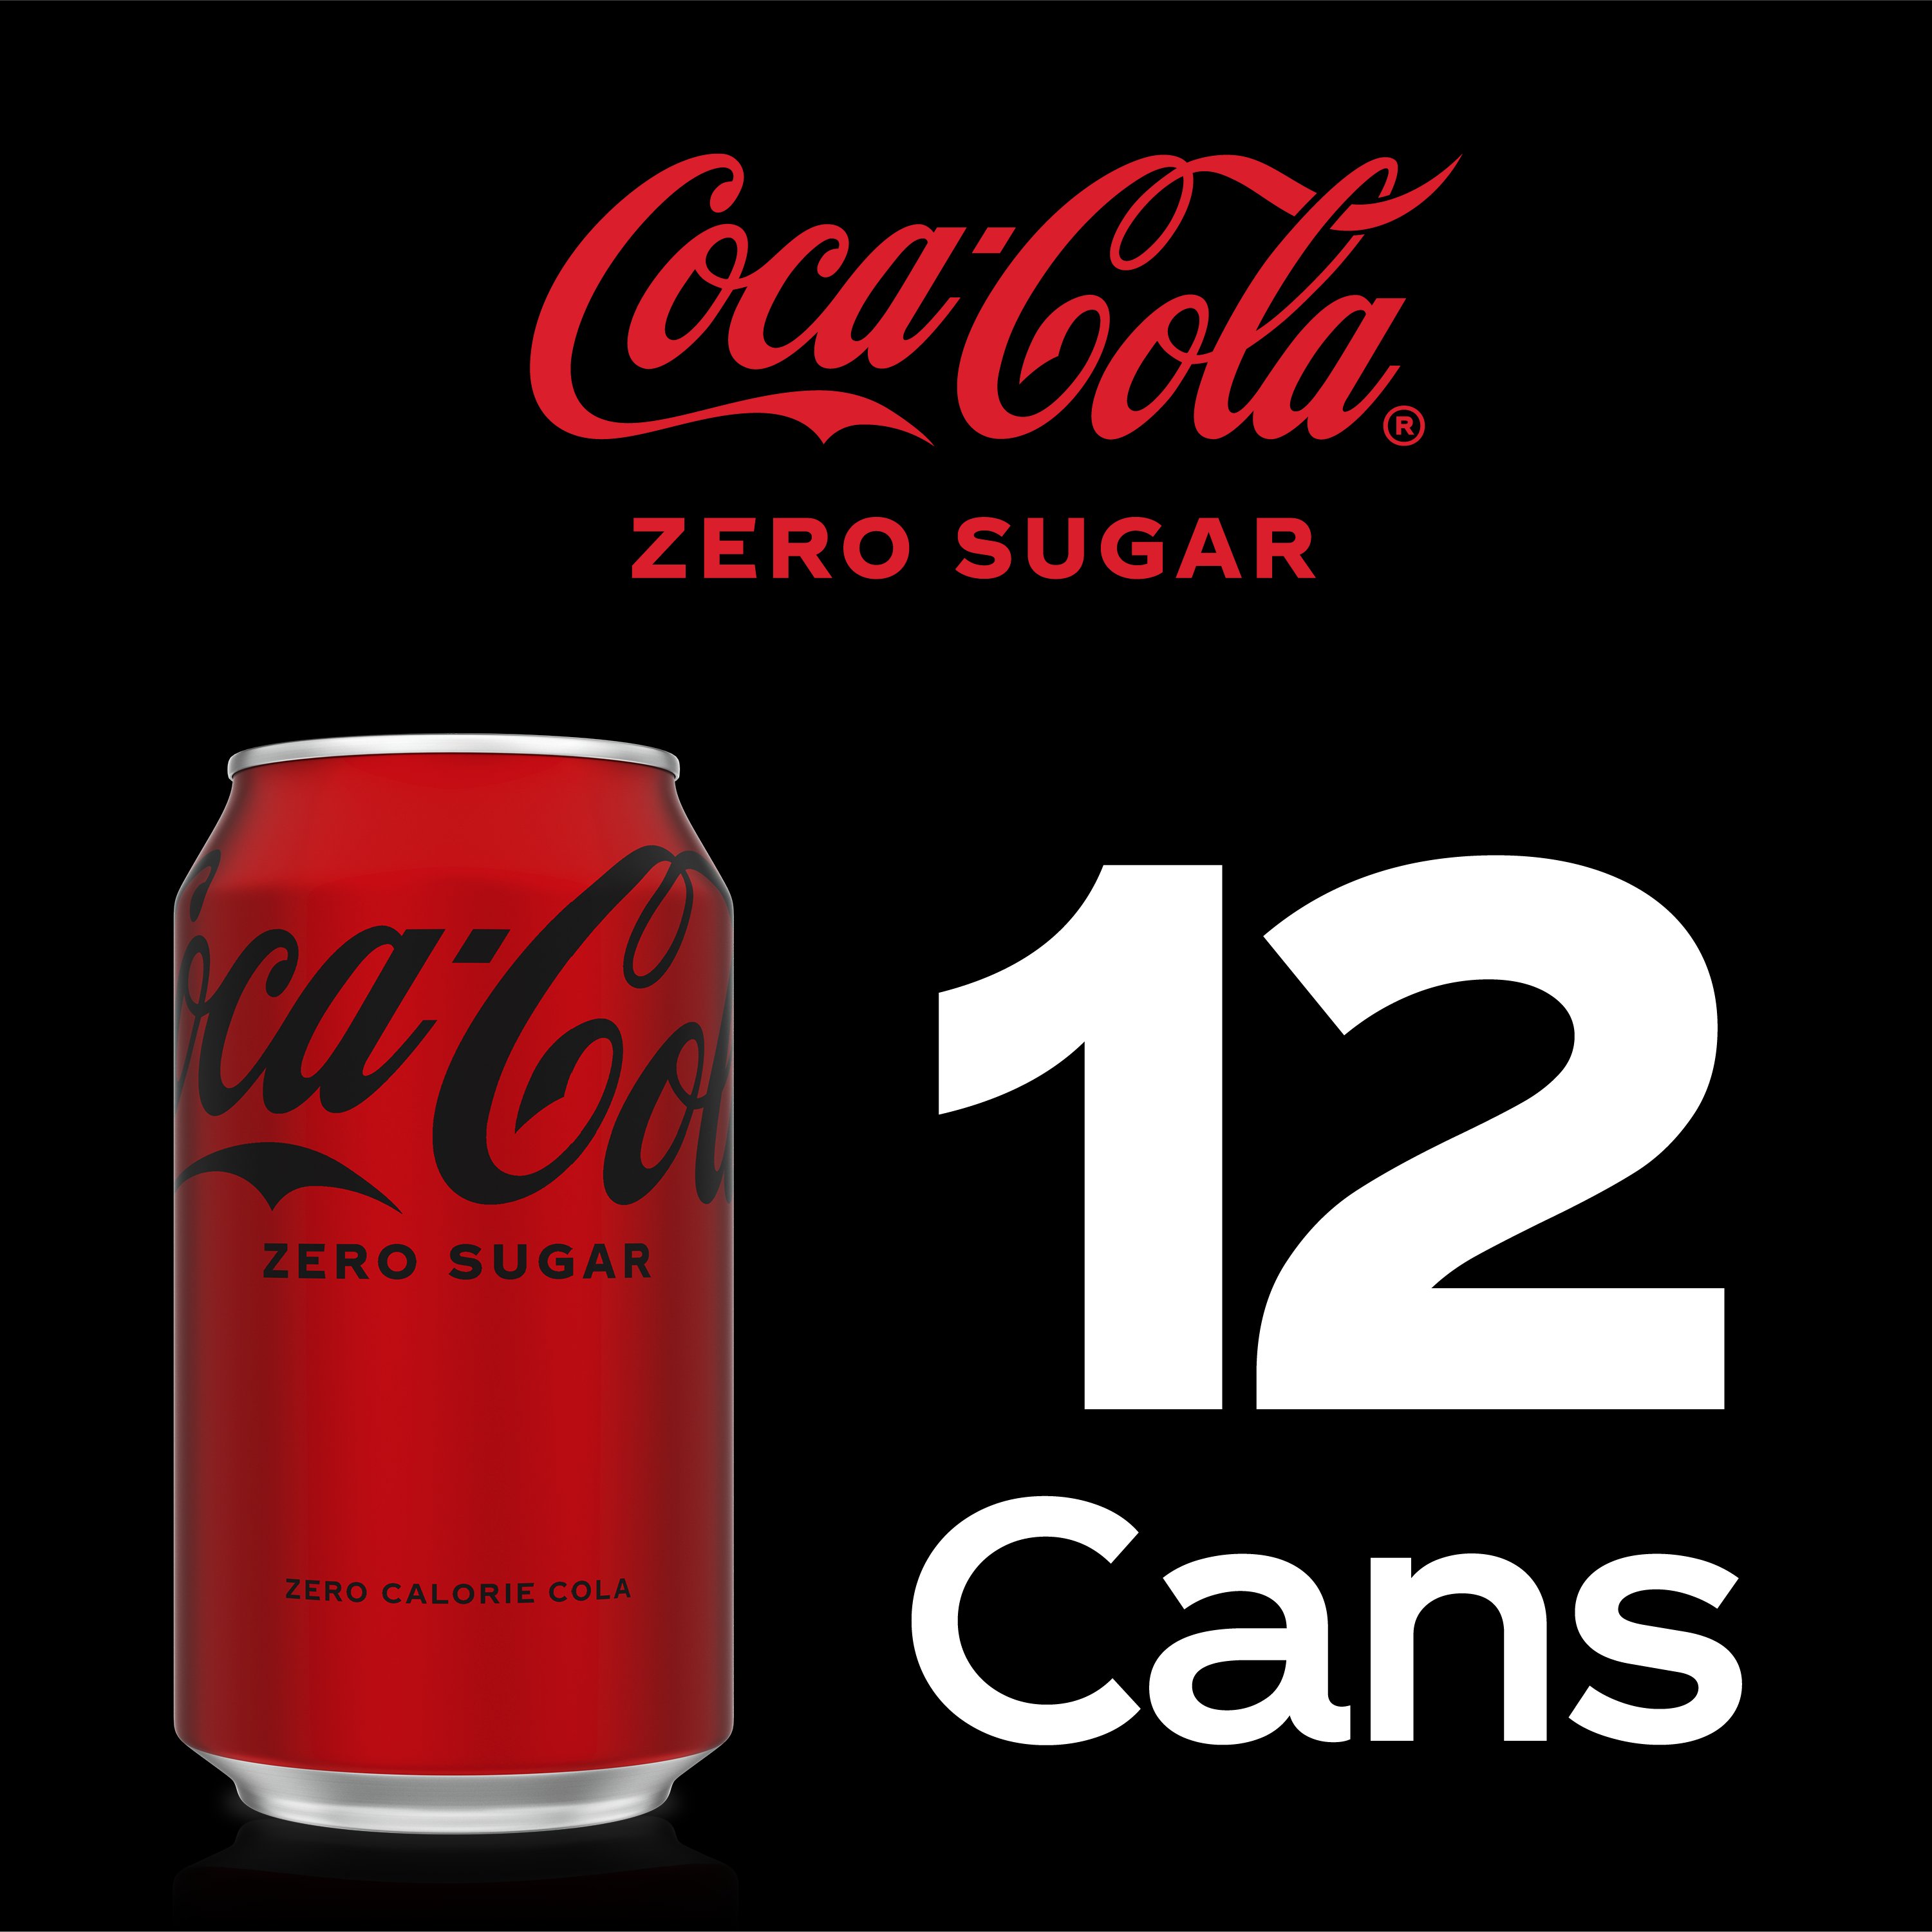 Coca-Cola Zero Sugar Coke 12 oz Cans - Shop Soda at H-E-B